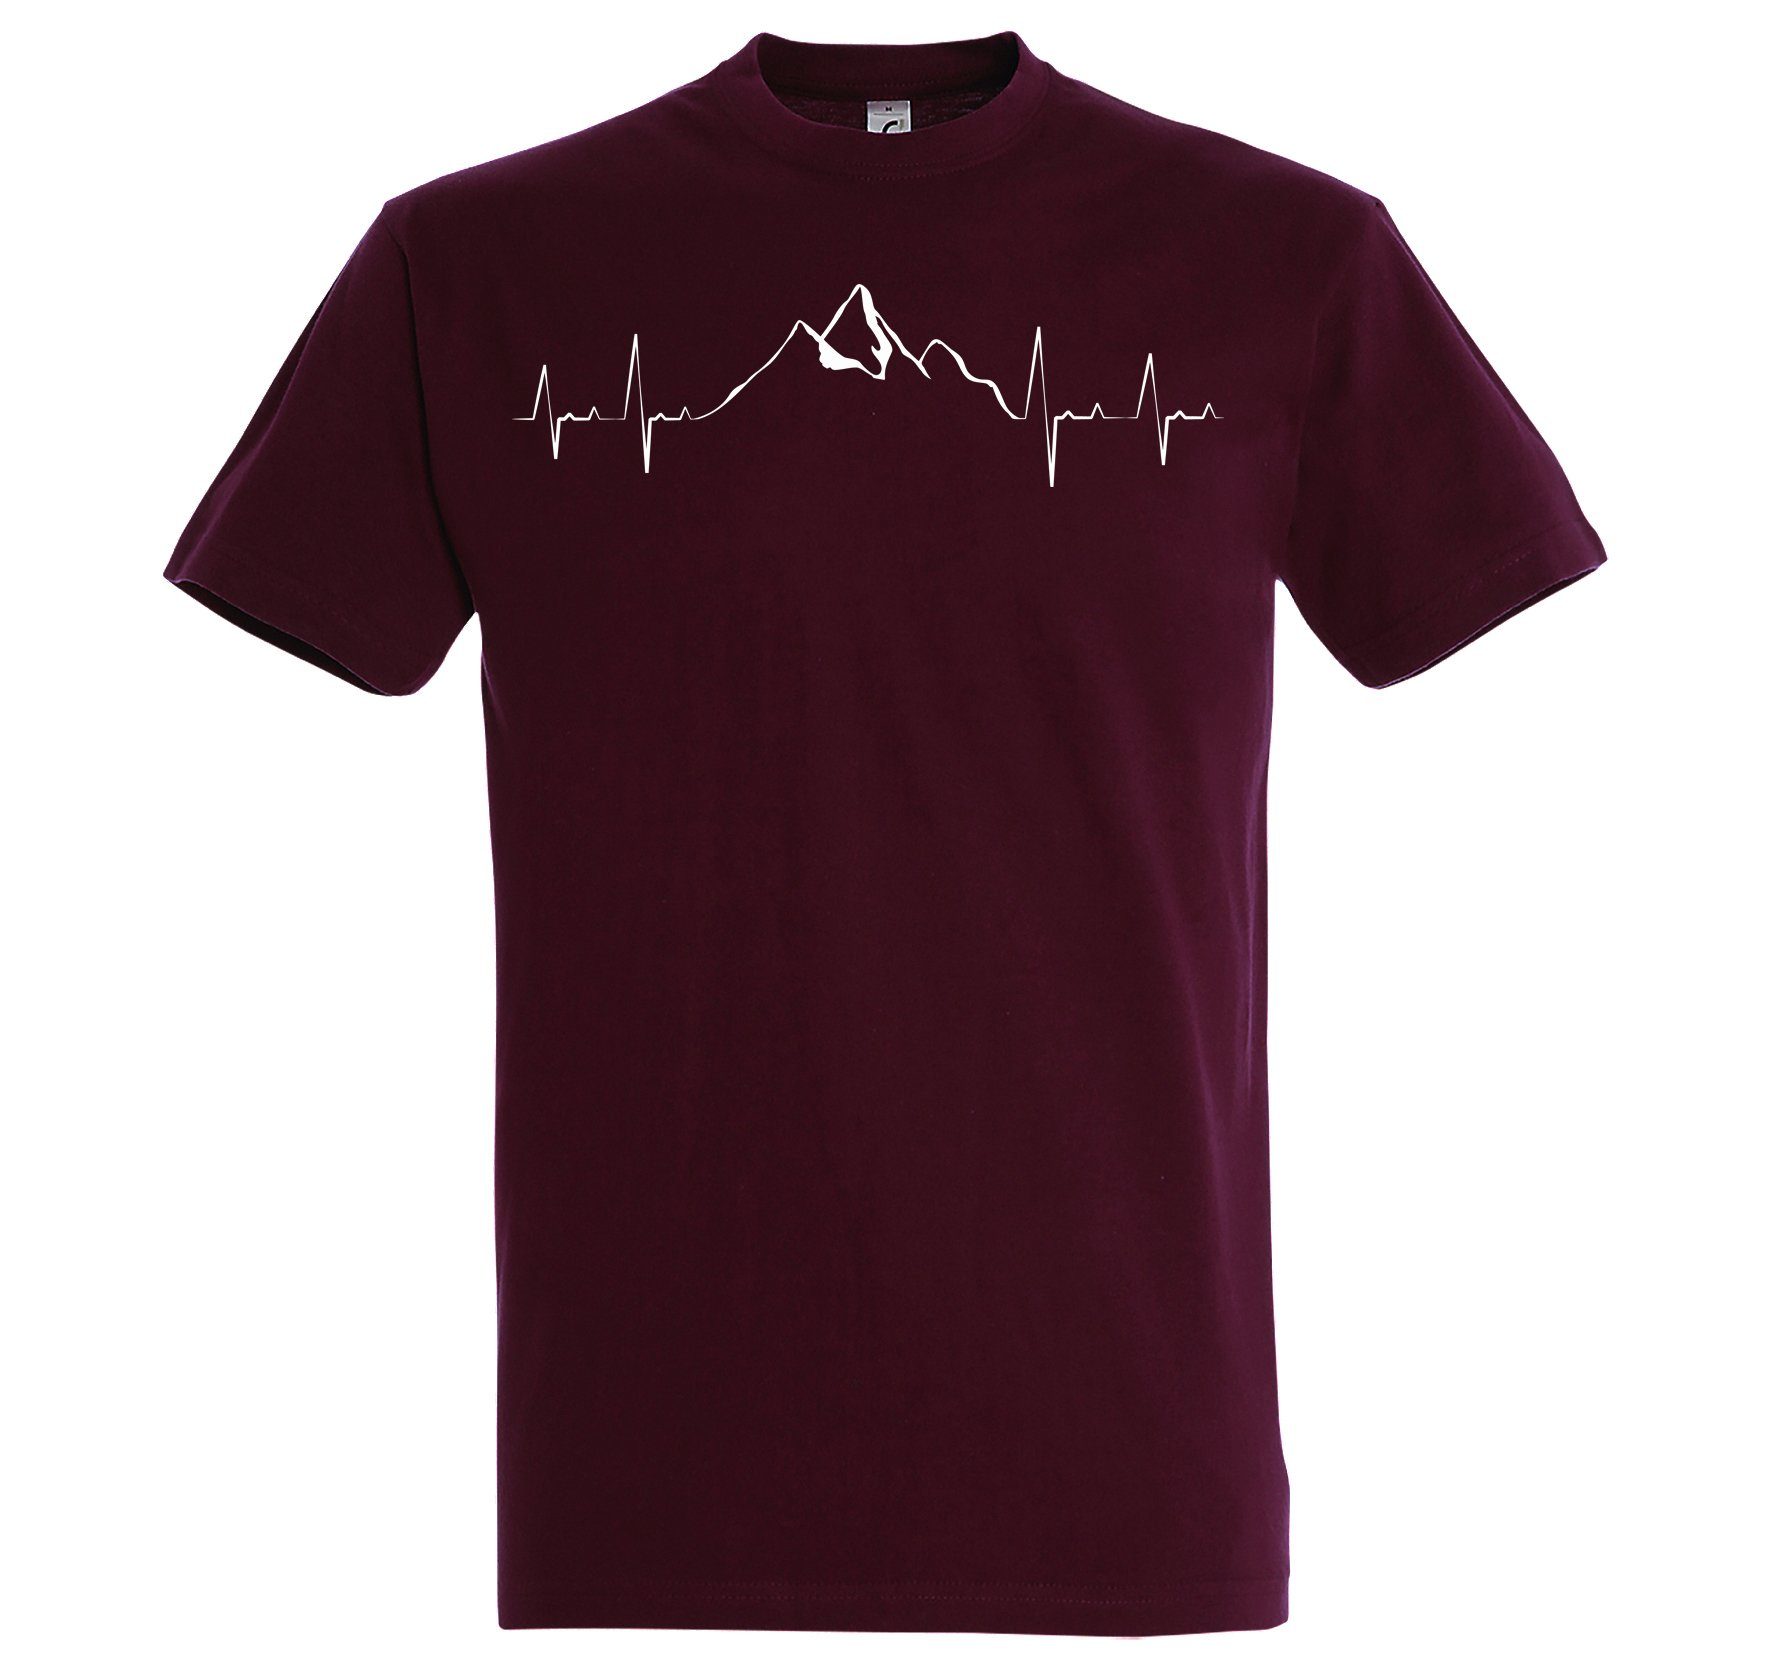 Burgund Youth Shirt Designz T-Shirt mit Frontprint Mountain Herren trendigem Heartbeat